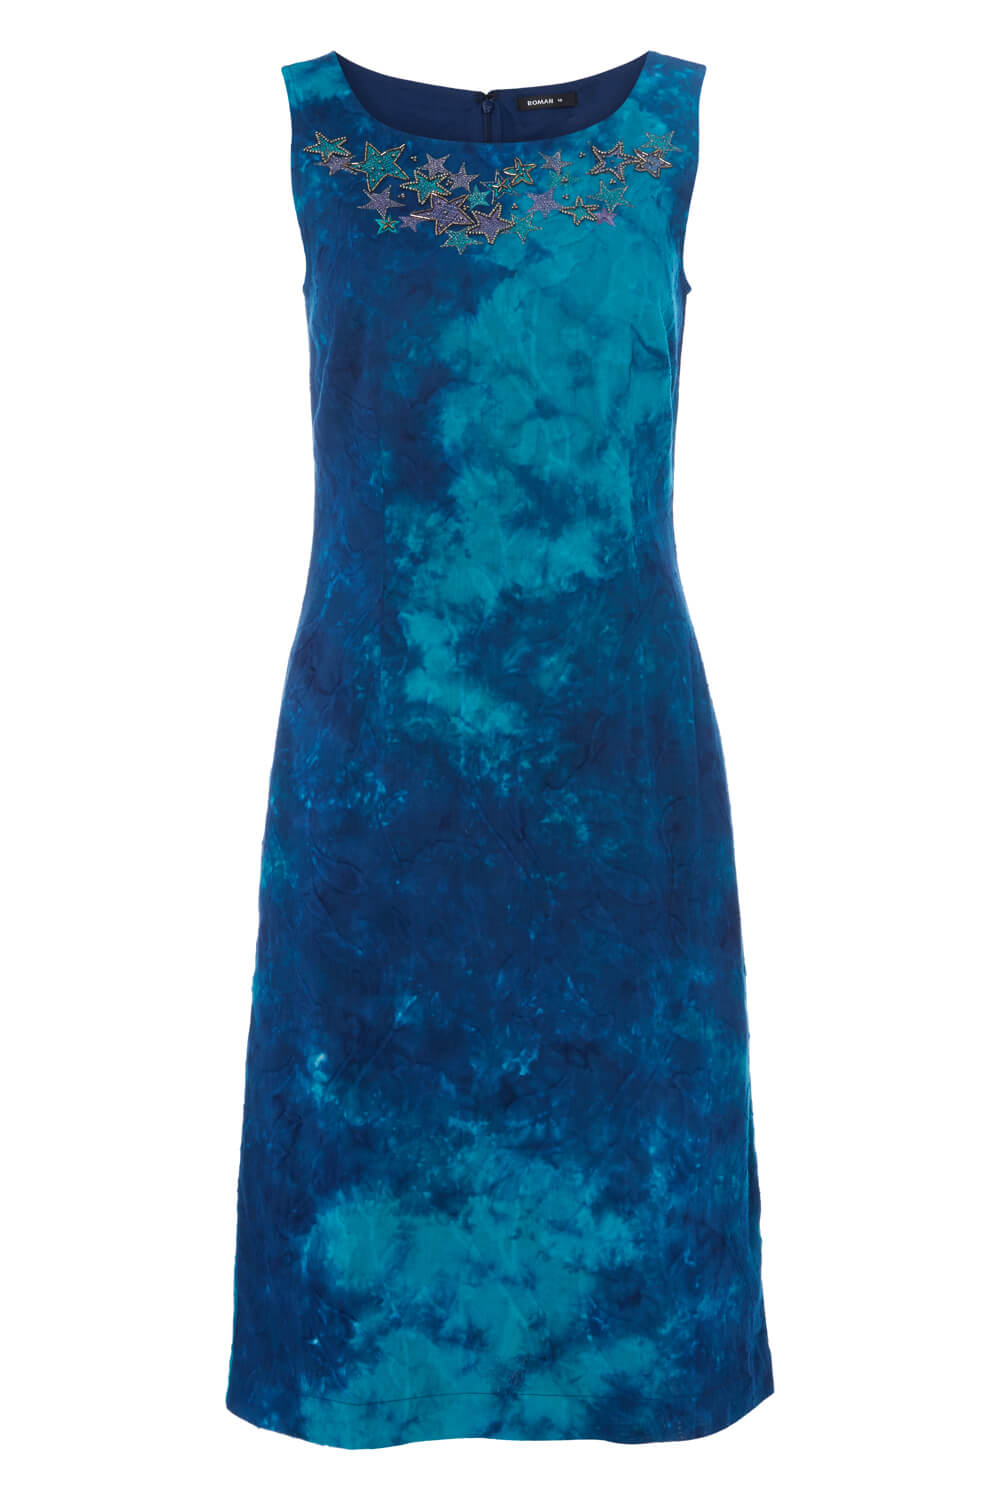 Blue Tie Dye Shift Dress, Image 4 of 4